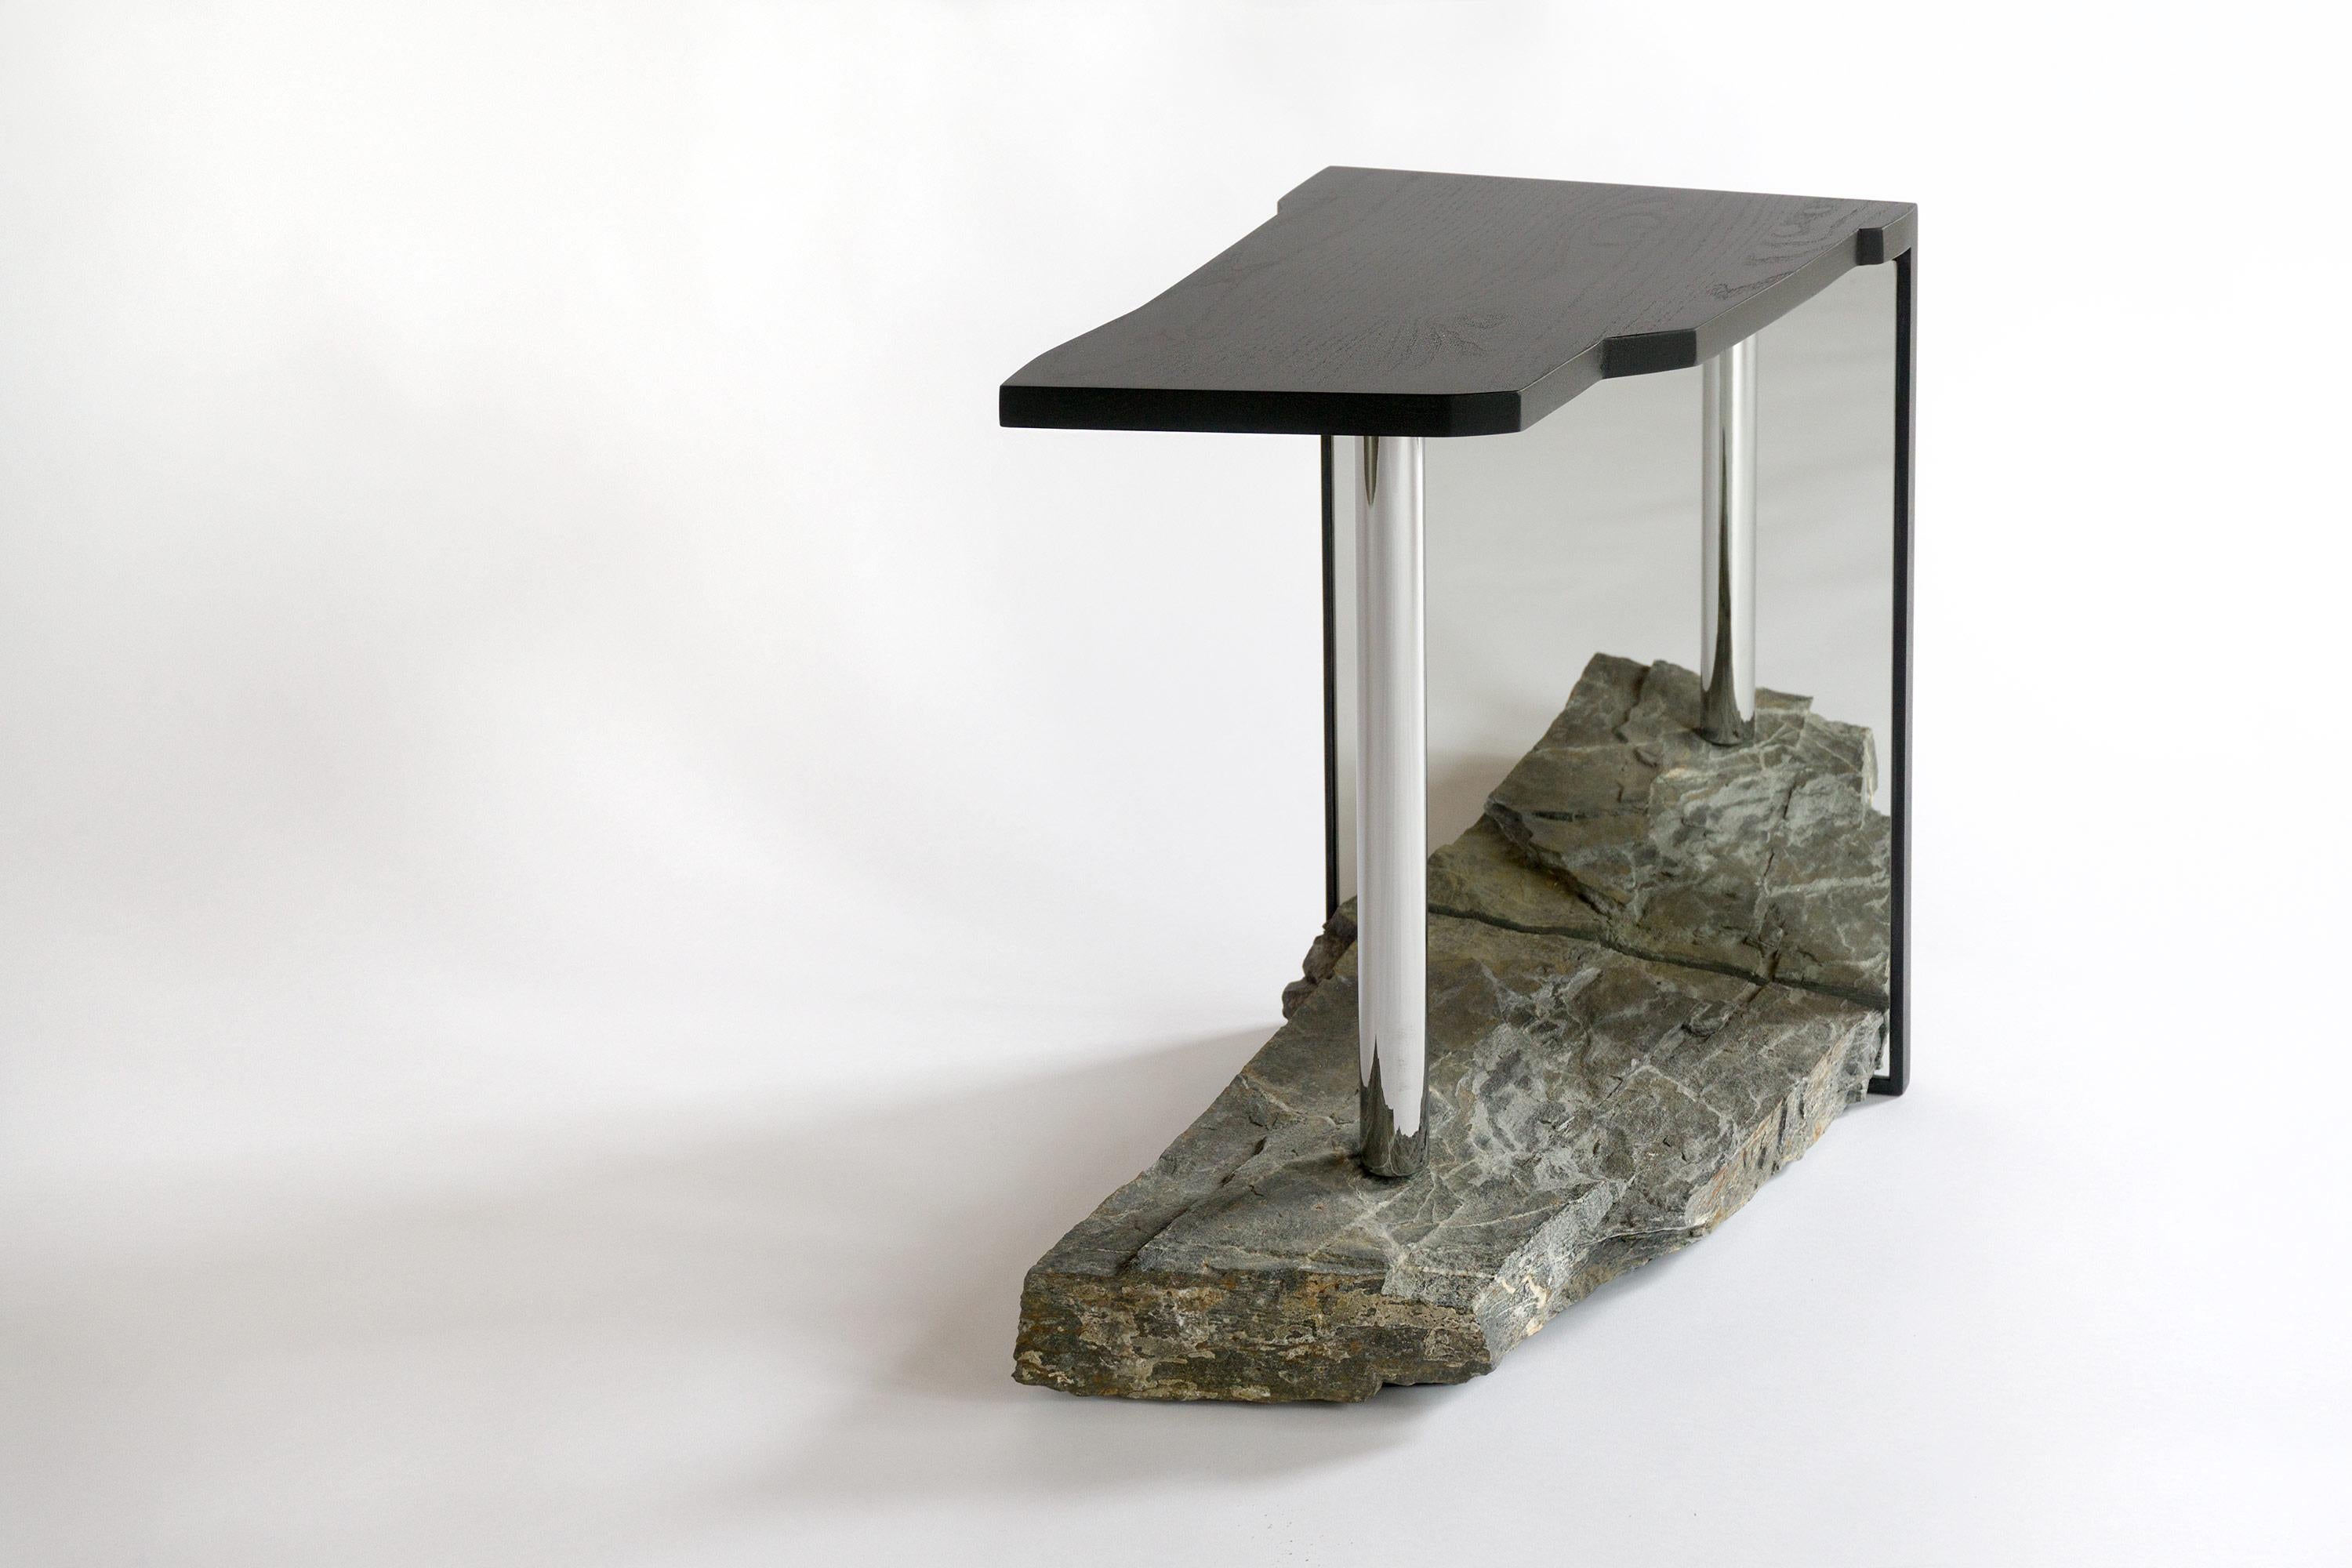 Le Missisquoi №11 intègre une pierre dont le contour et les caractéristiques ont été tracés et façonnés dans le plateau de la table, planant au-dessus d'elle pour refléter ses origines. Une illusion d'air et d'infini est créée par le reflet qui